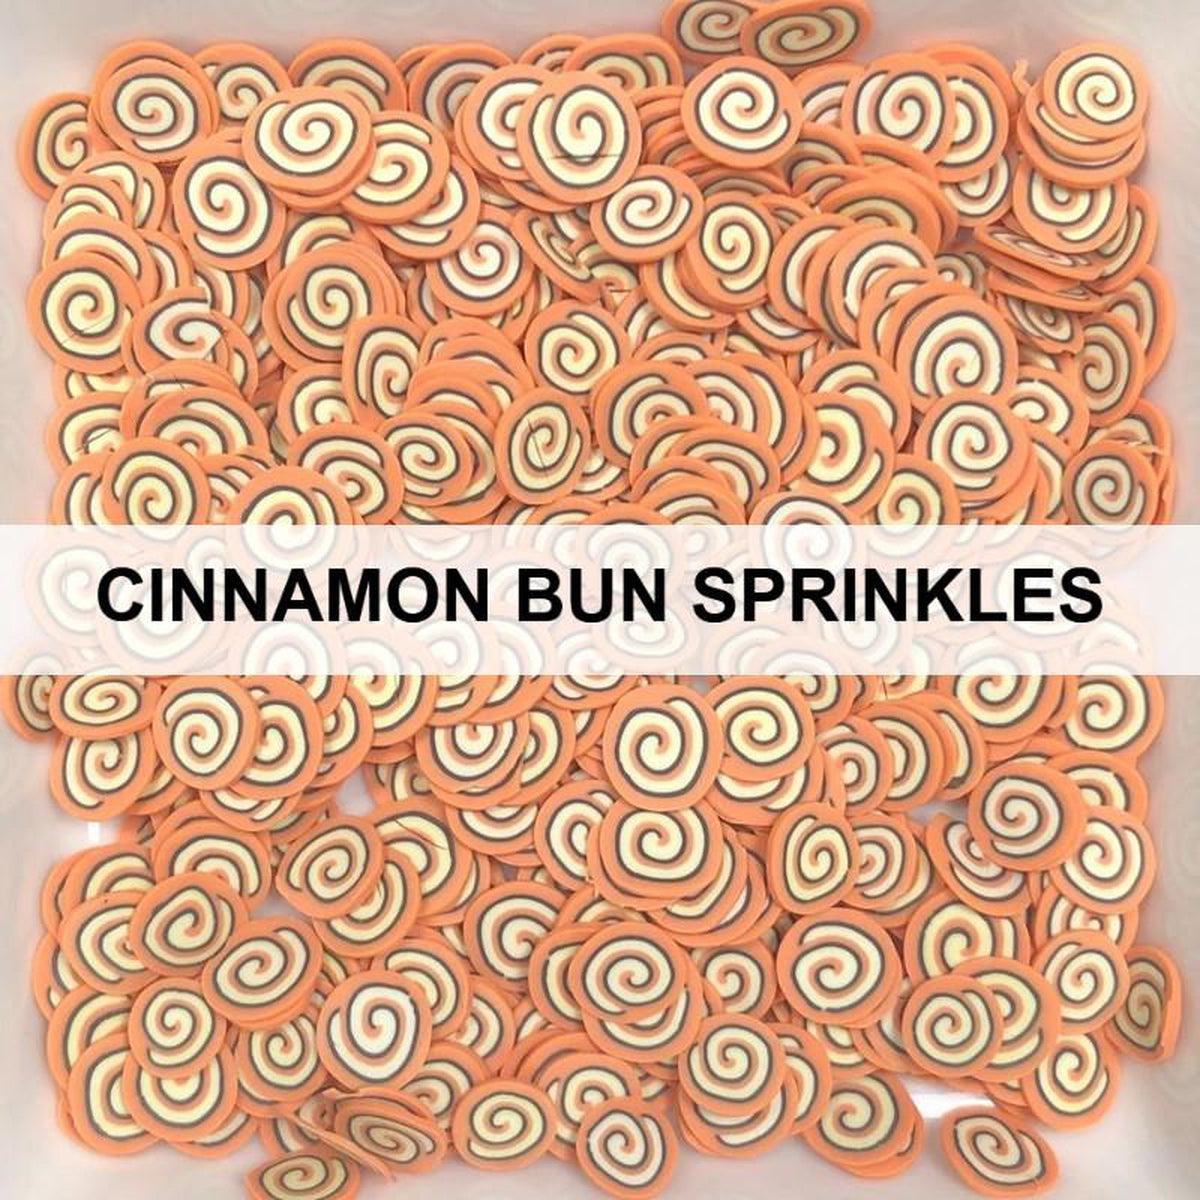 Cinnamon Bun Sprinkles